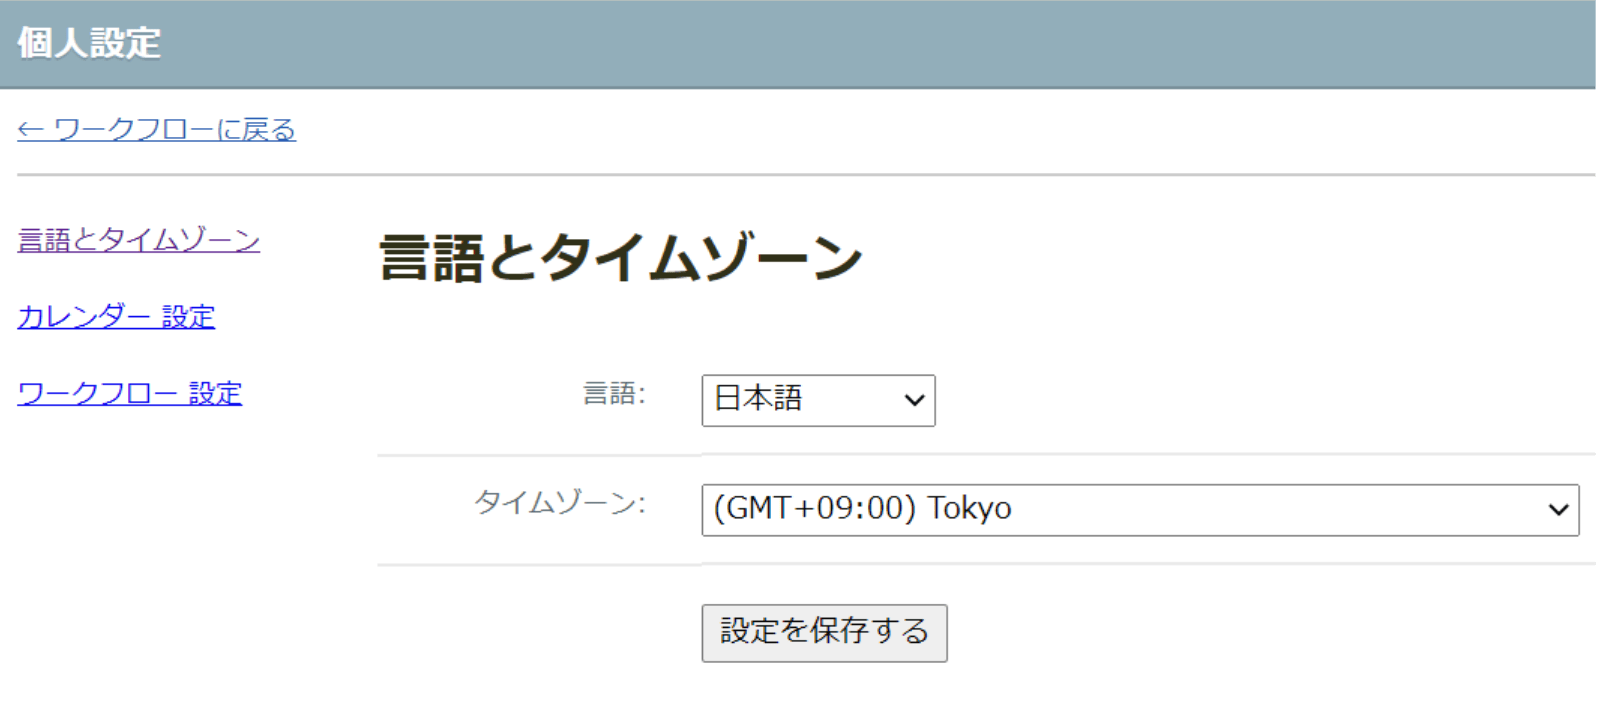 rakumo ワークフロー 言語とタイムゾーン設定画面